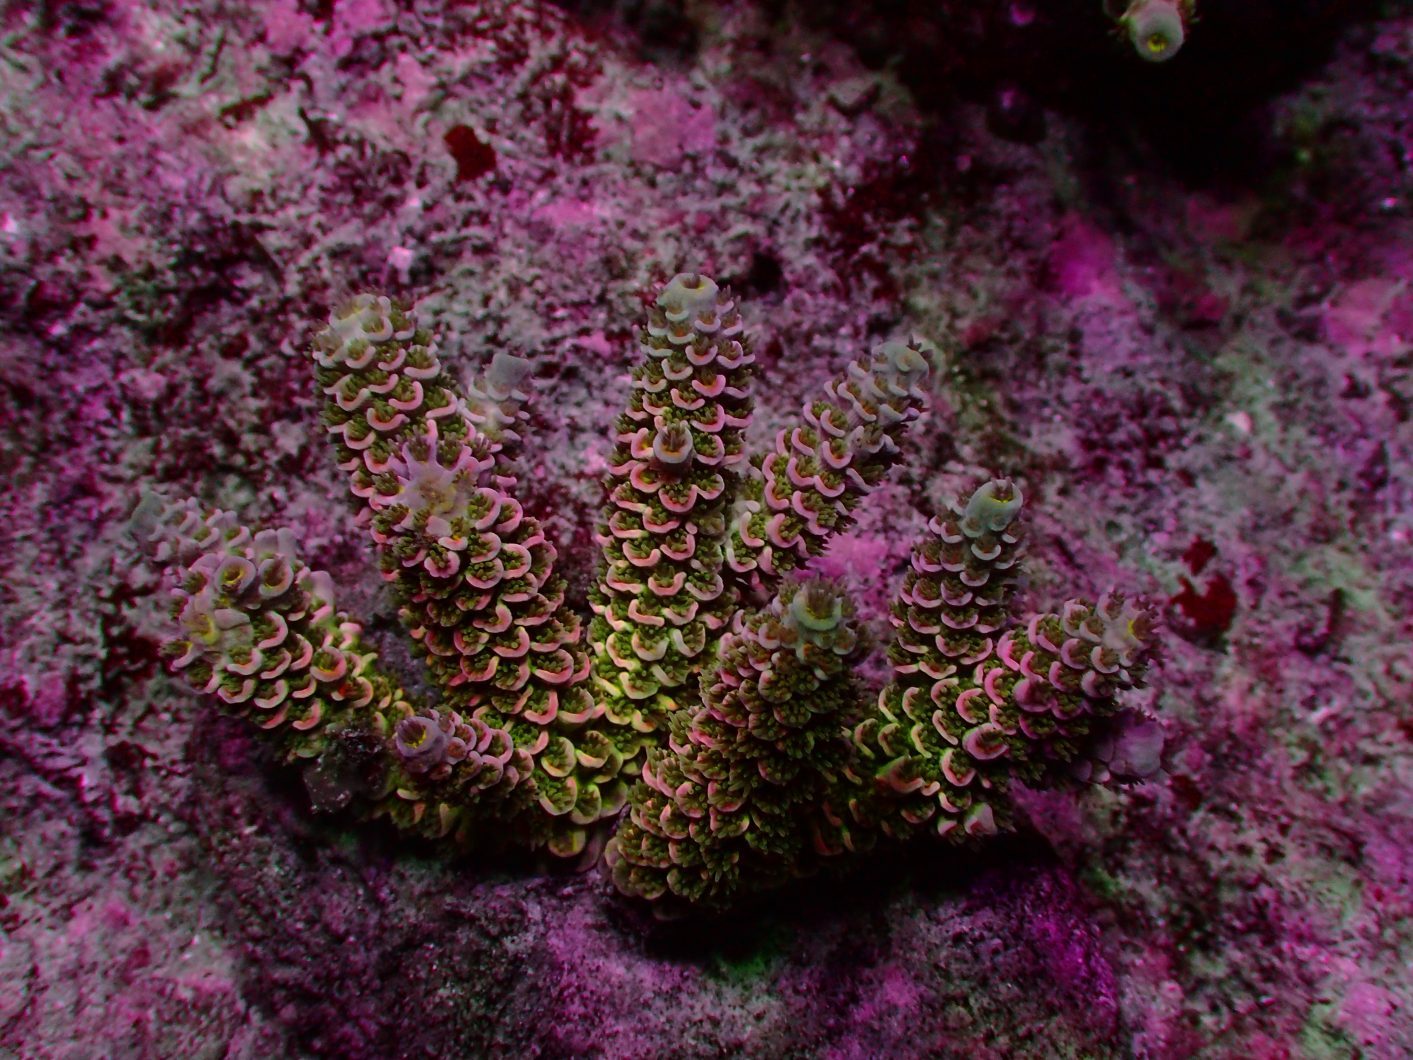 лучшие рифовые аквариумы светодиоды 2020